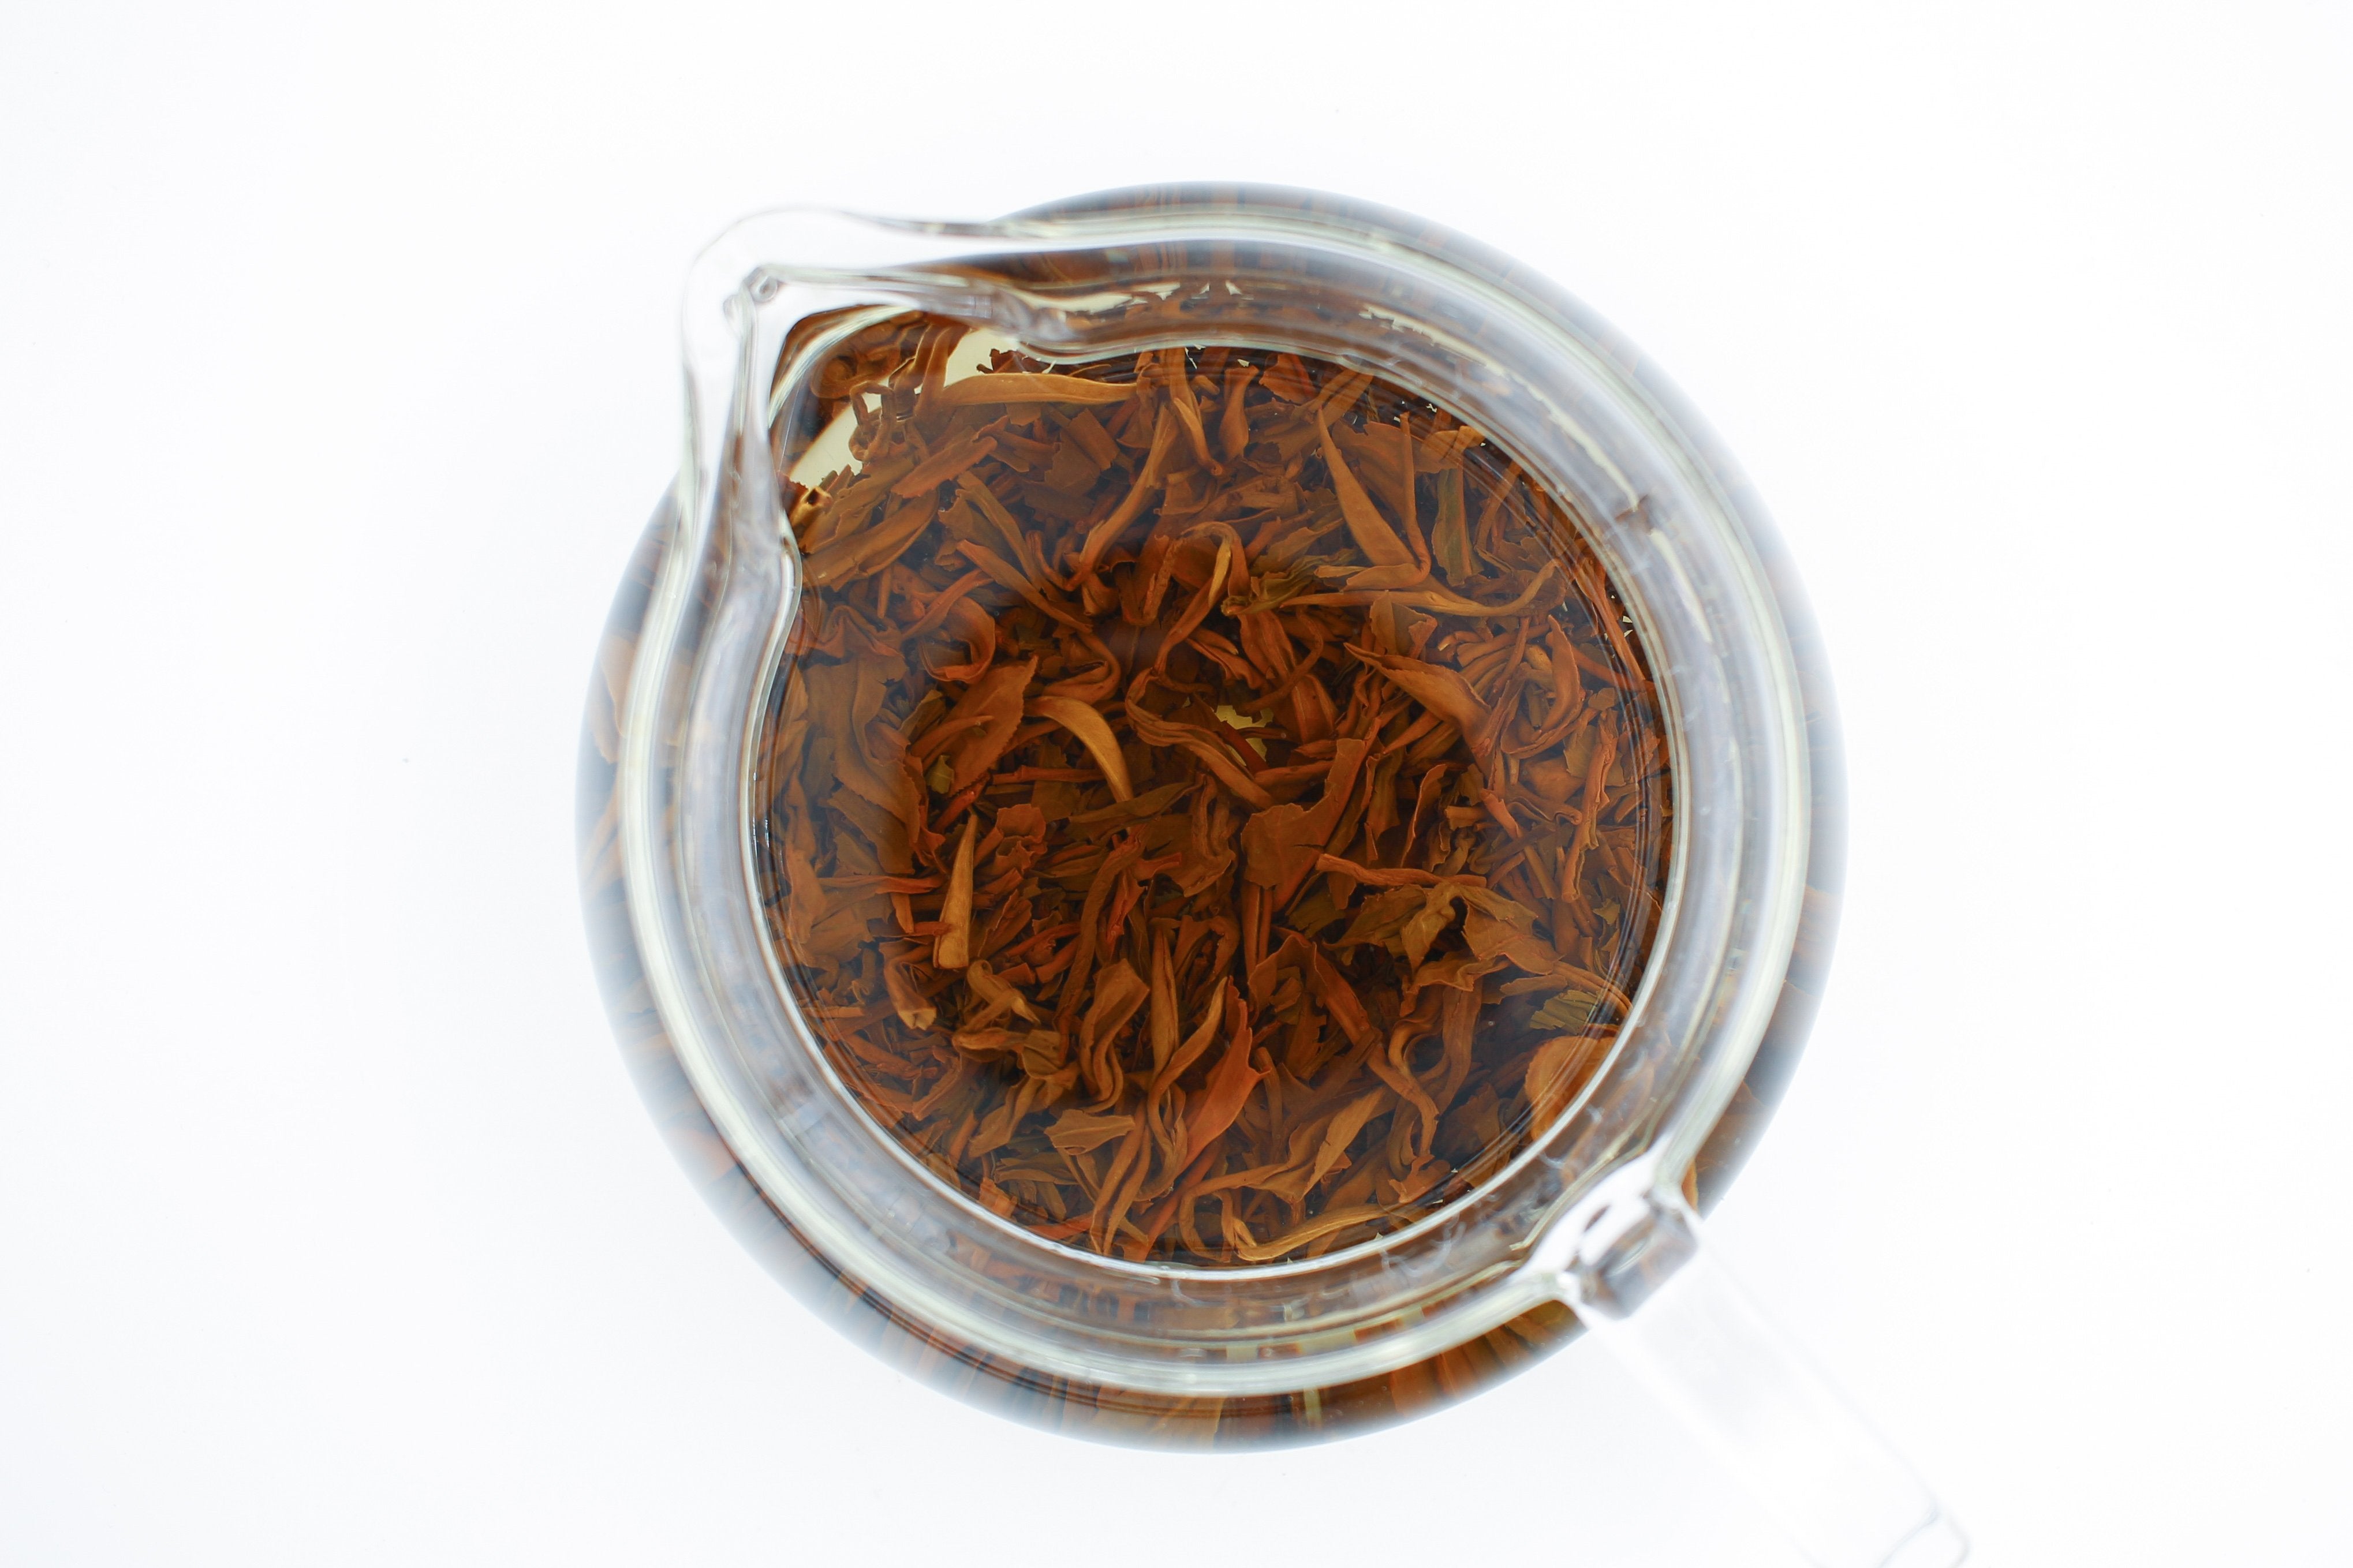 China & India "Camellia Blend" Black Tea